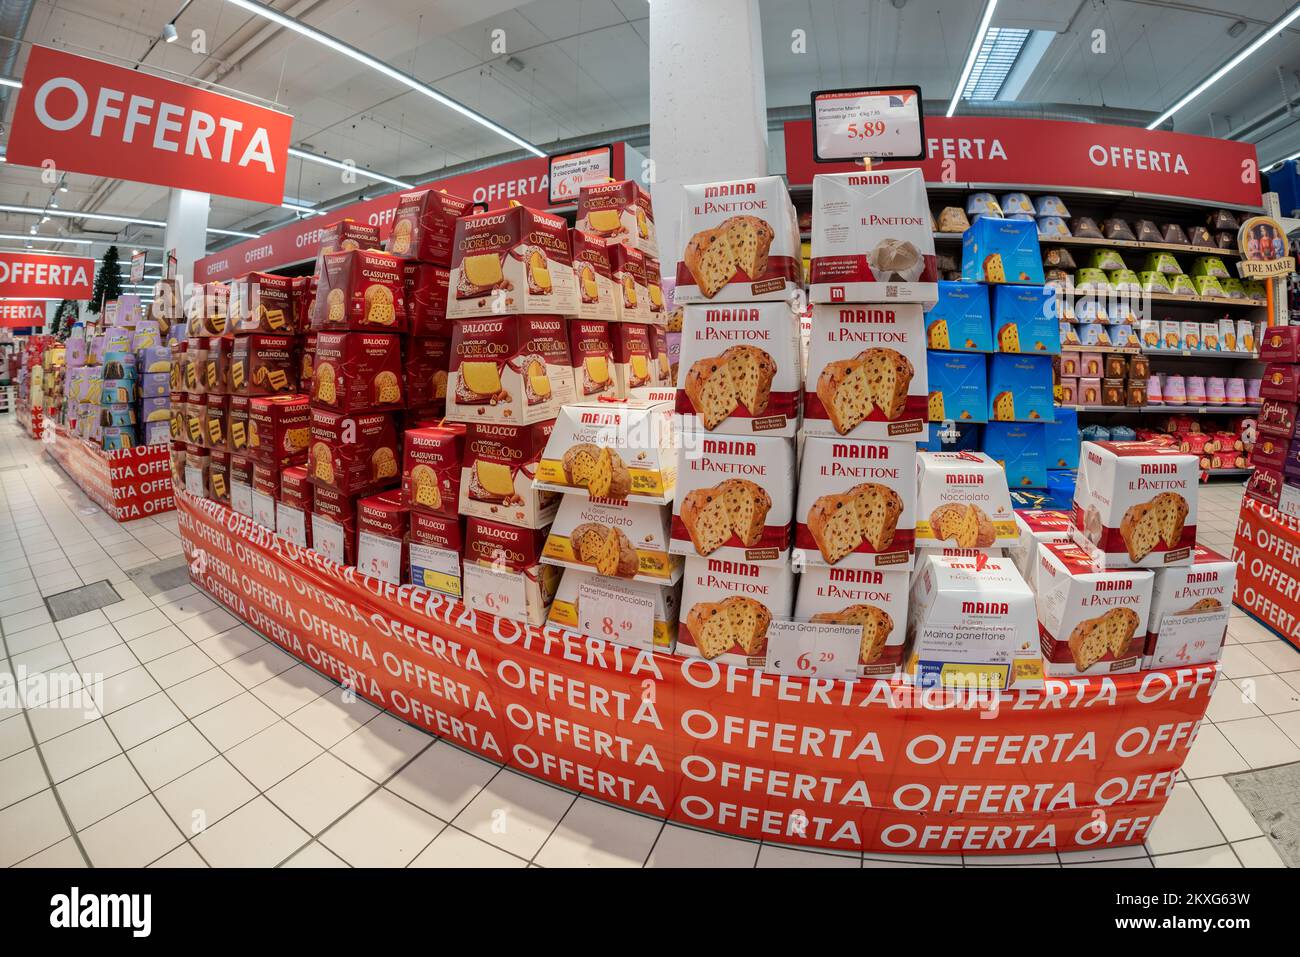 BRA, Cuneo, Italie - 30 novembre 2022: Paquets de panettone de marque  Balocco e Maina dans l'offre palette et étagères dans un supermarché italien.  T Photo Stock - Alamy